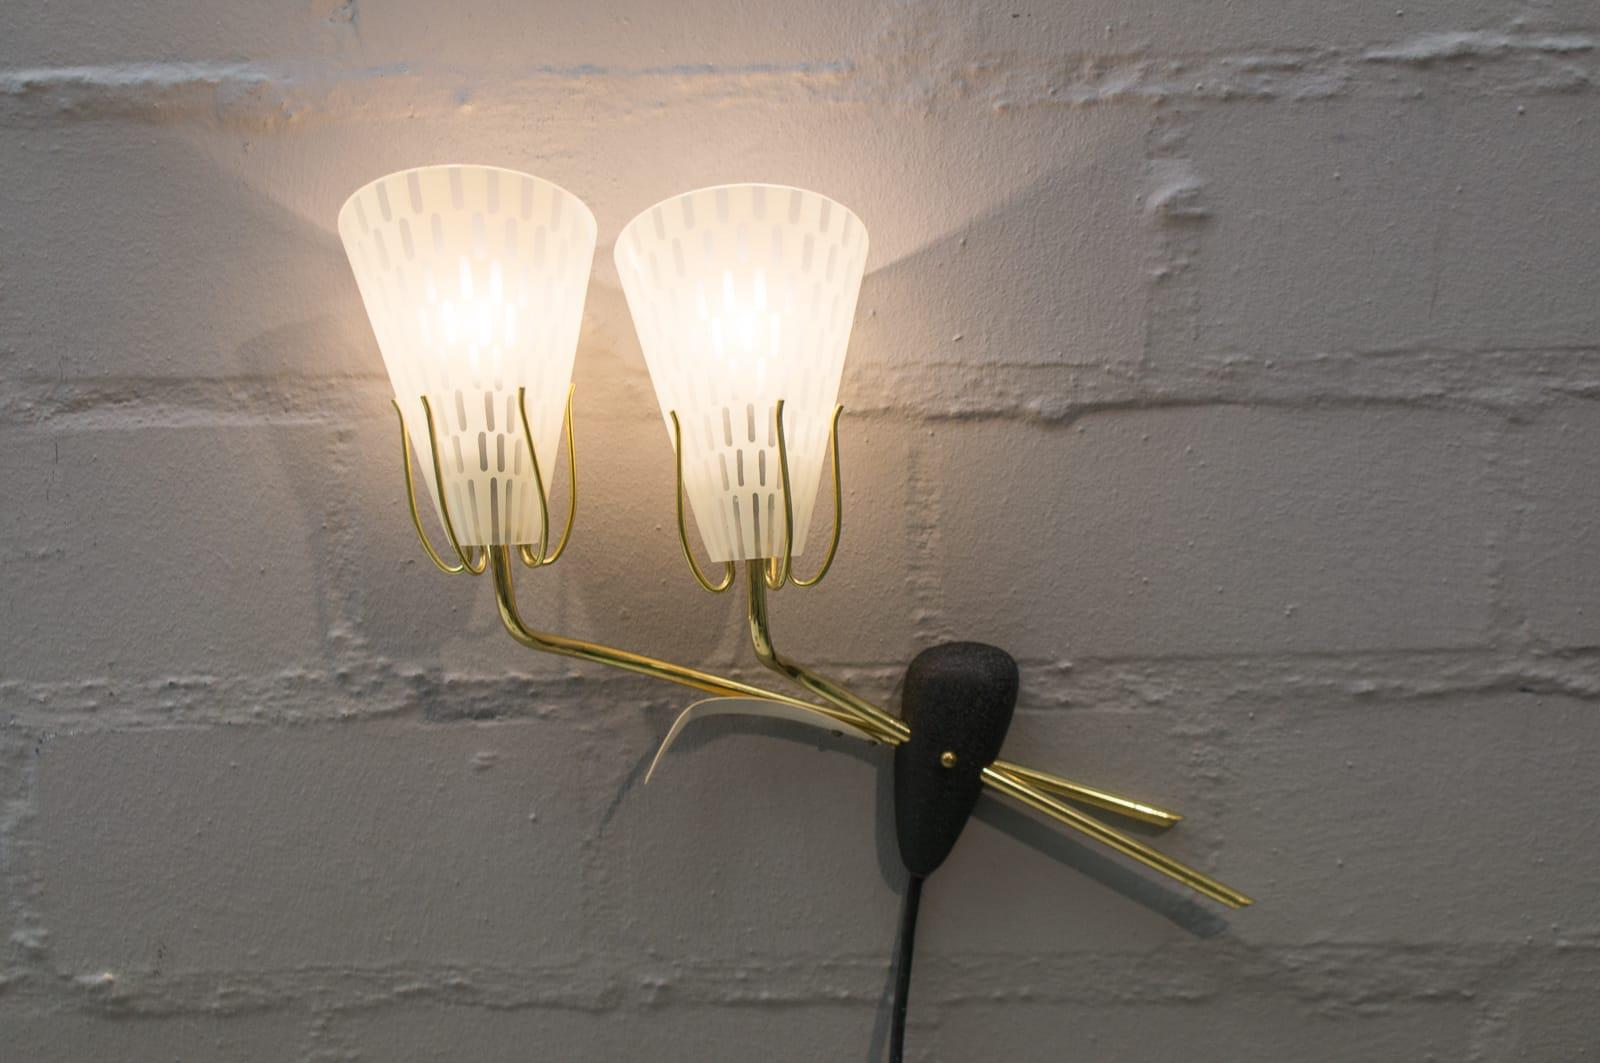 Les lampes sont exécutées avec des ampoules E14 Edison à vis. Il est câblé et en état de marche. Il fonctionne à la fois sur 110 et 230 volts.

 